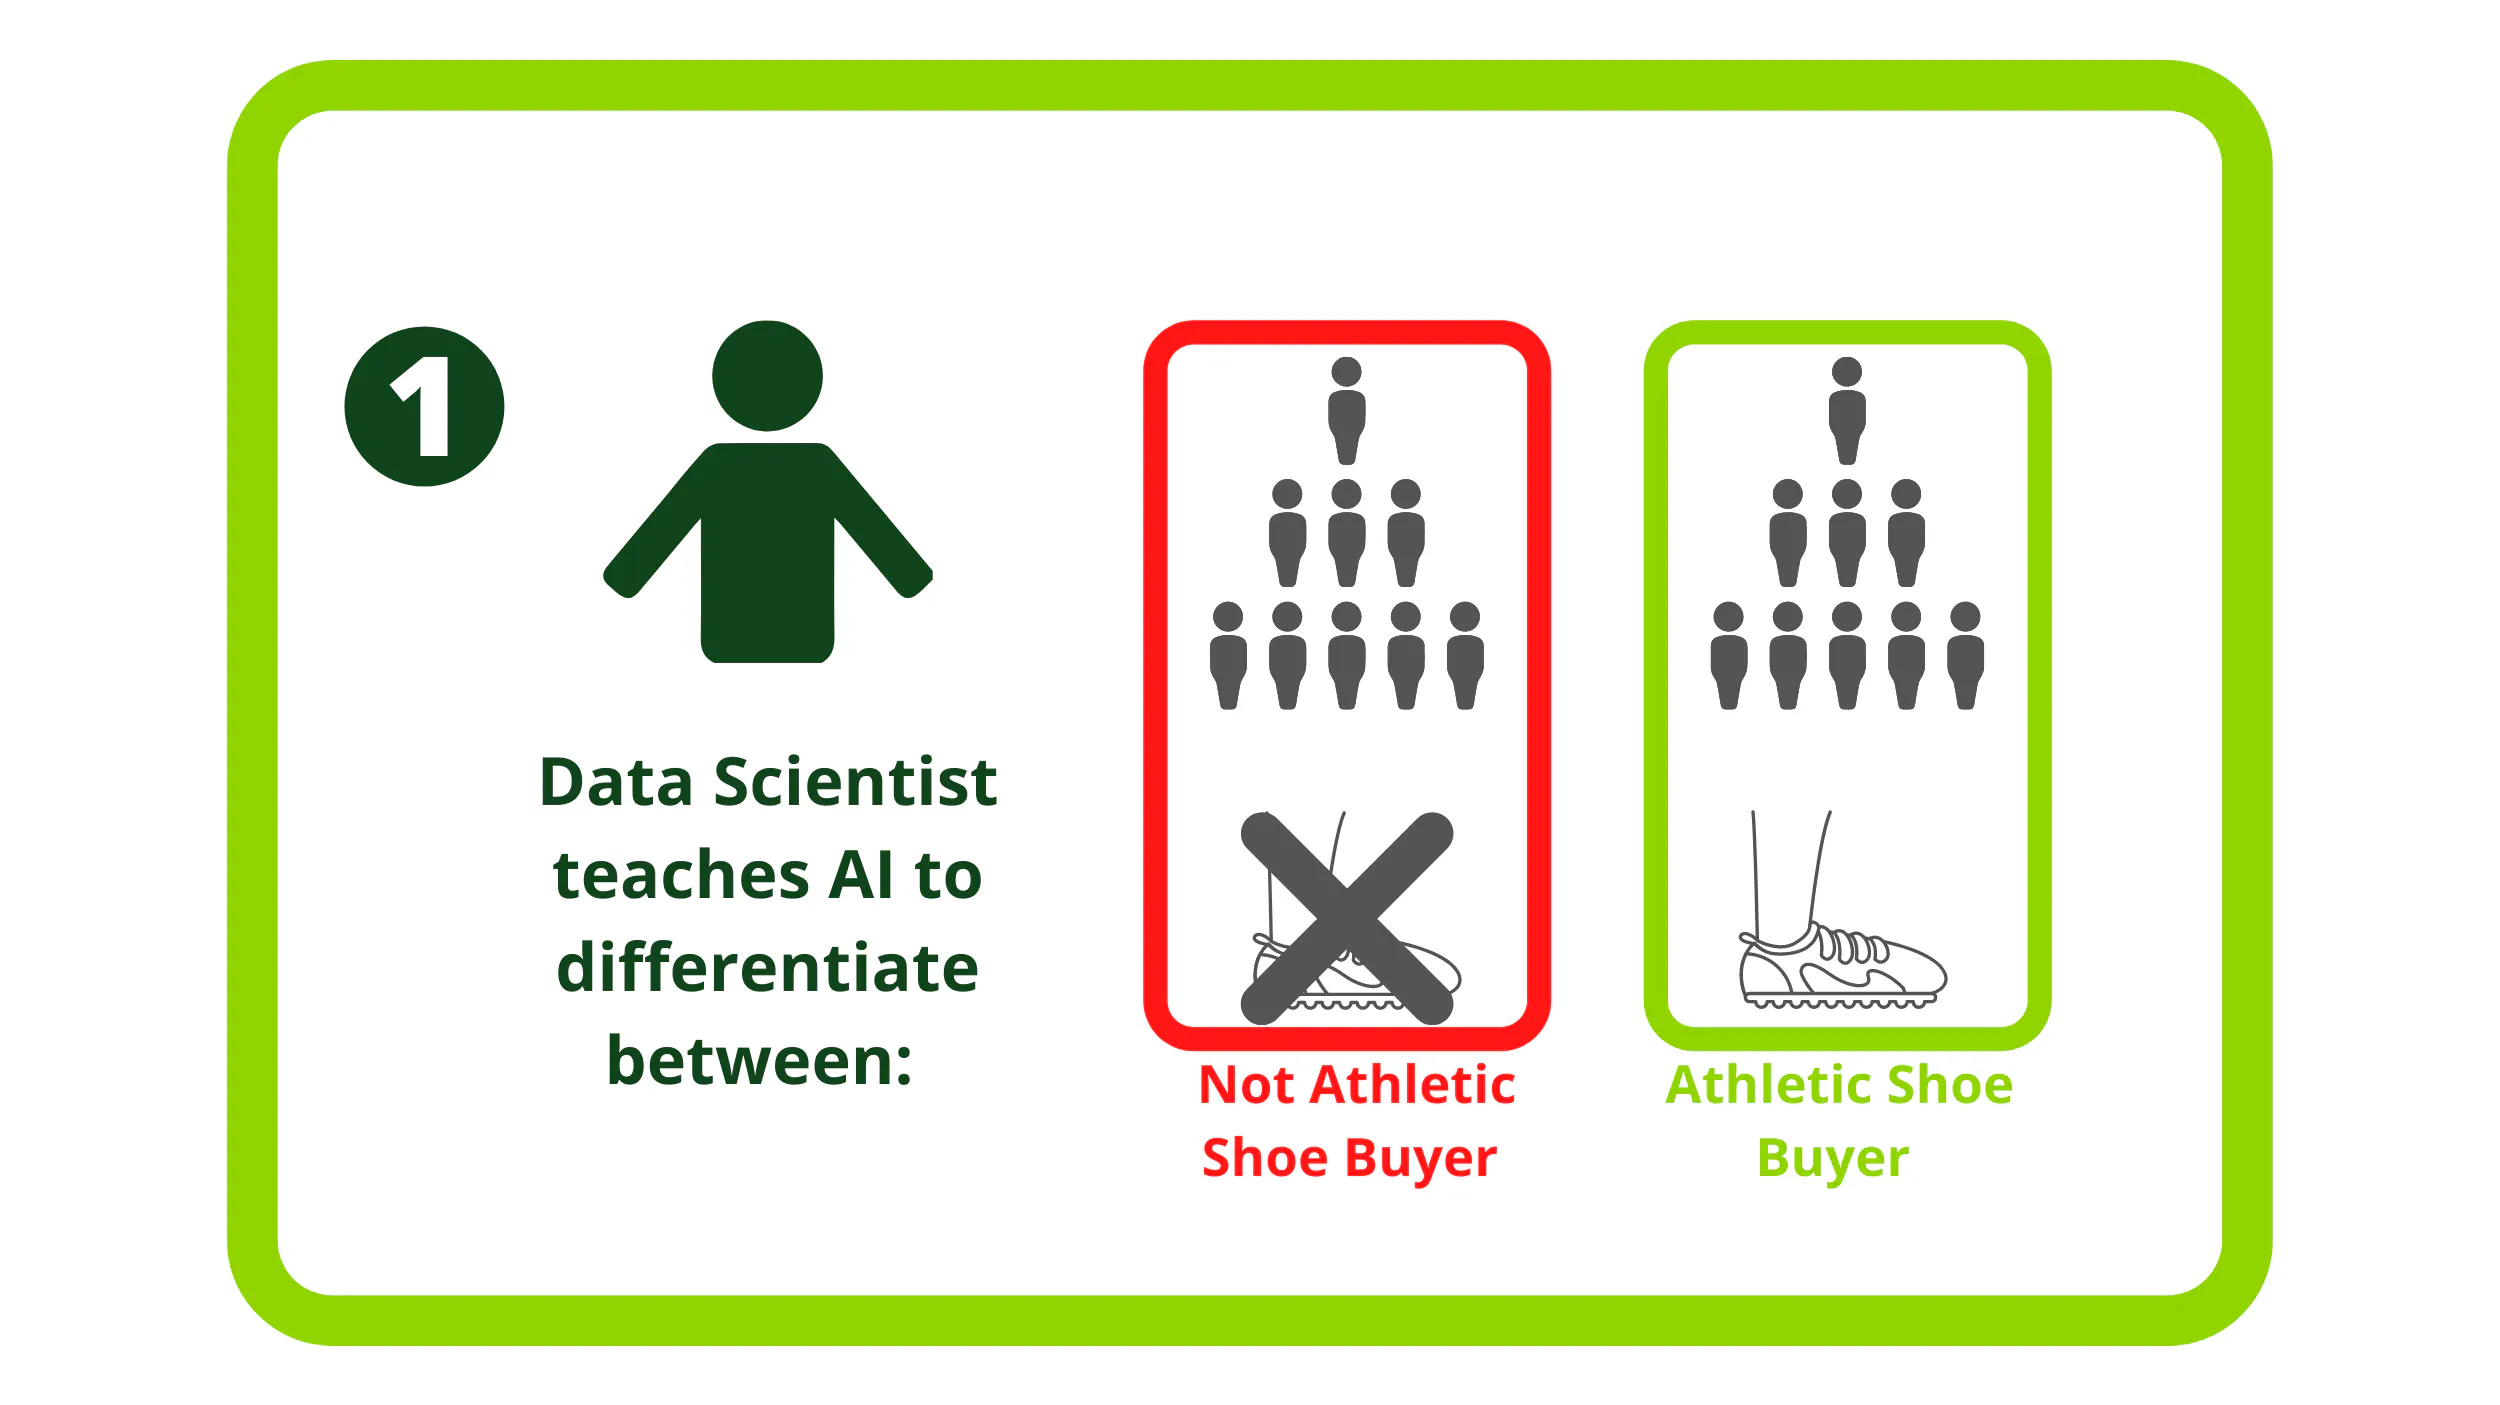 Uno scienziato di dati insegna all'AI a distinguere tra acquirente di scarpe sportive e non sportive